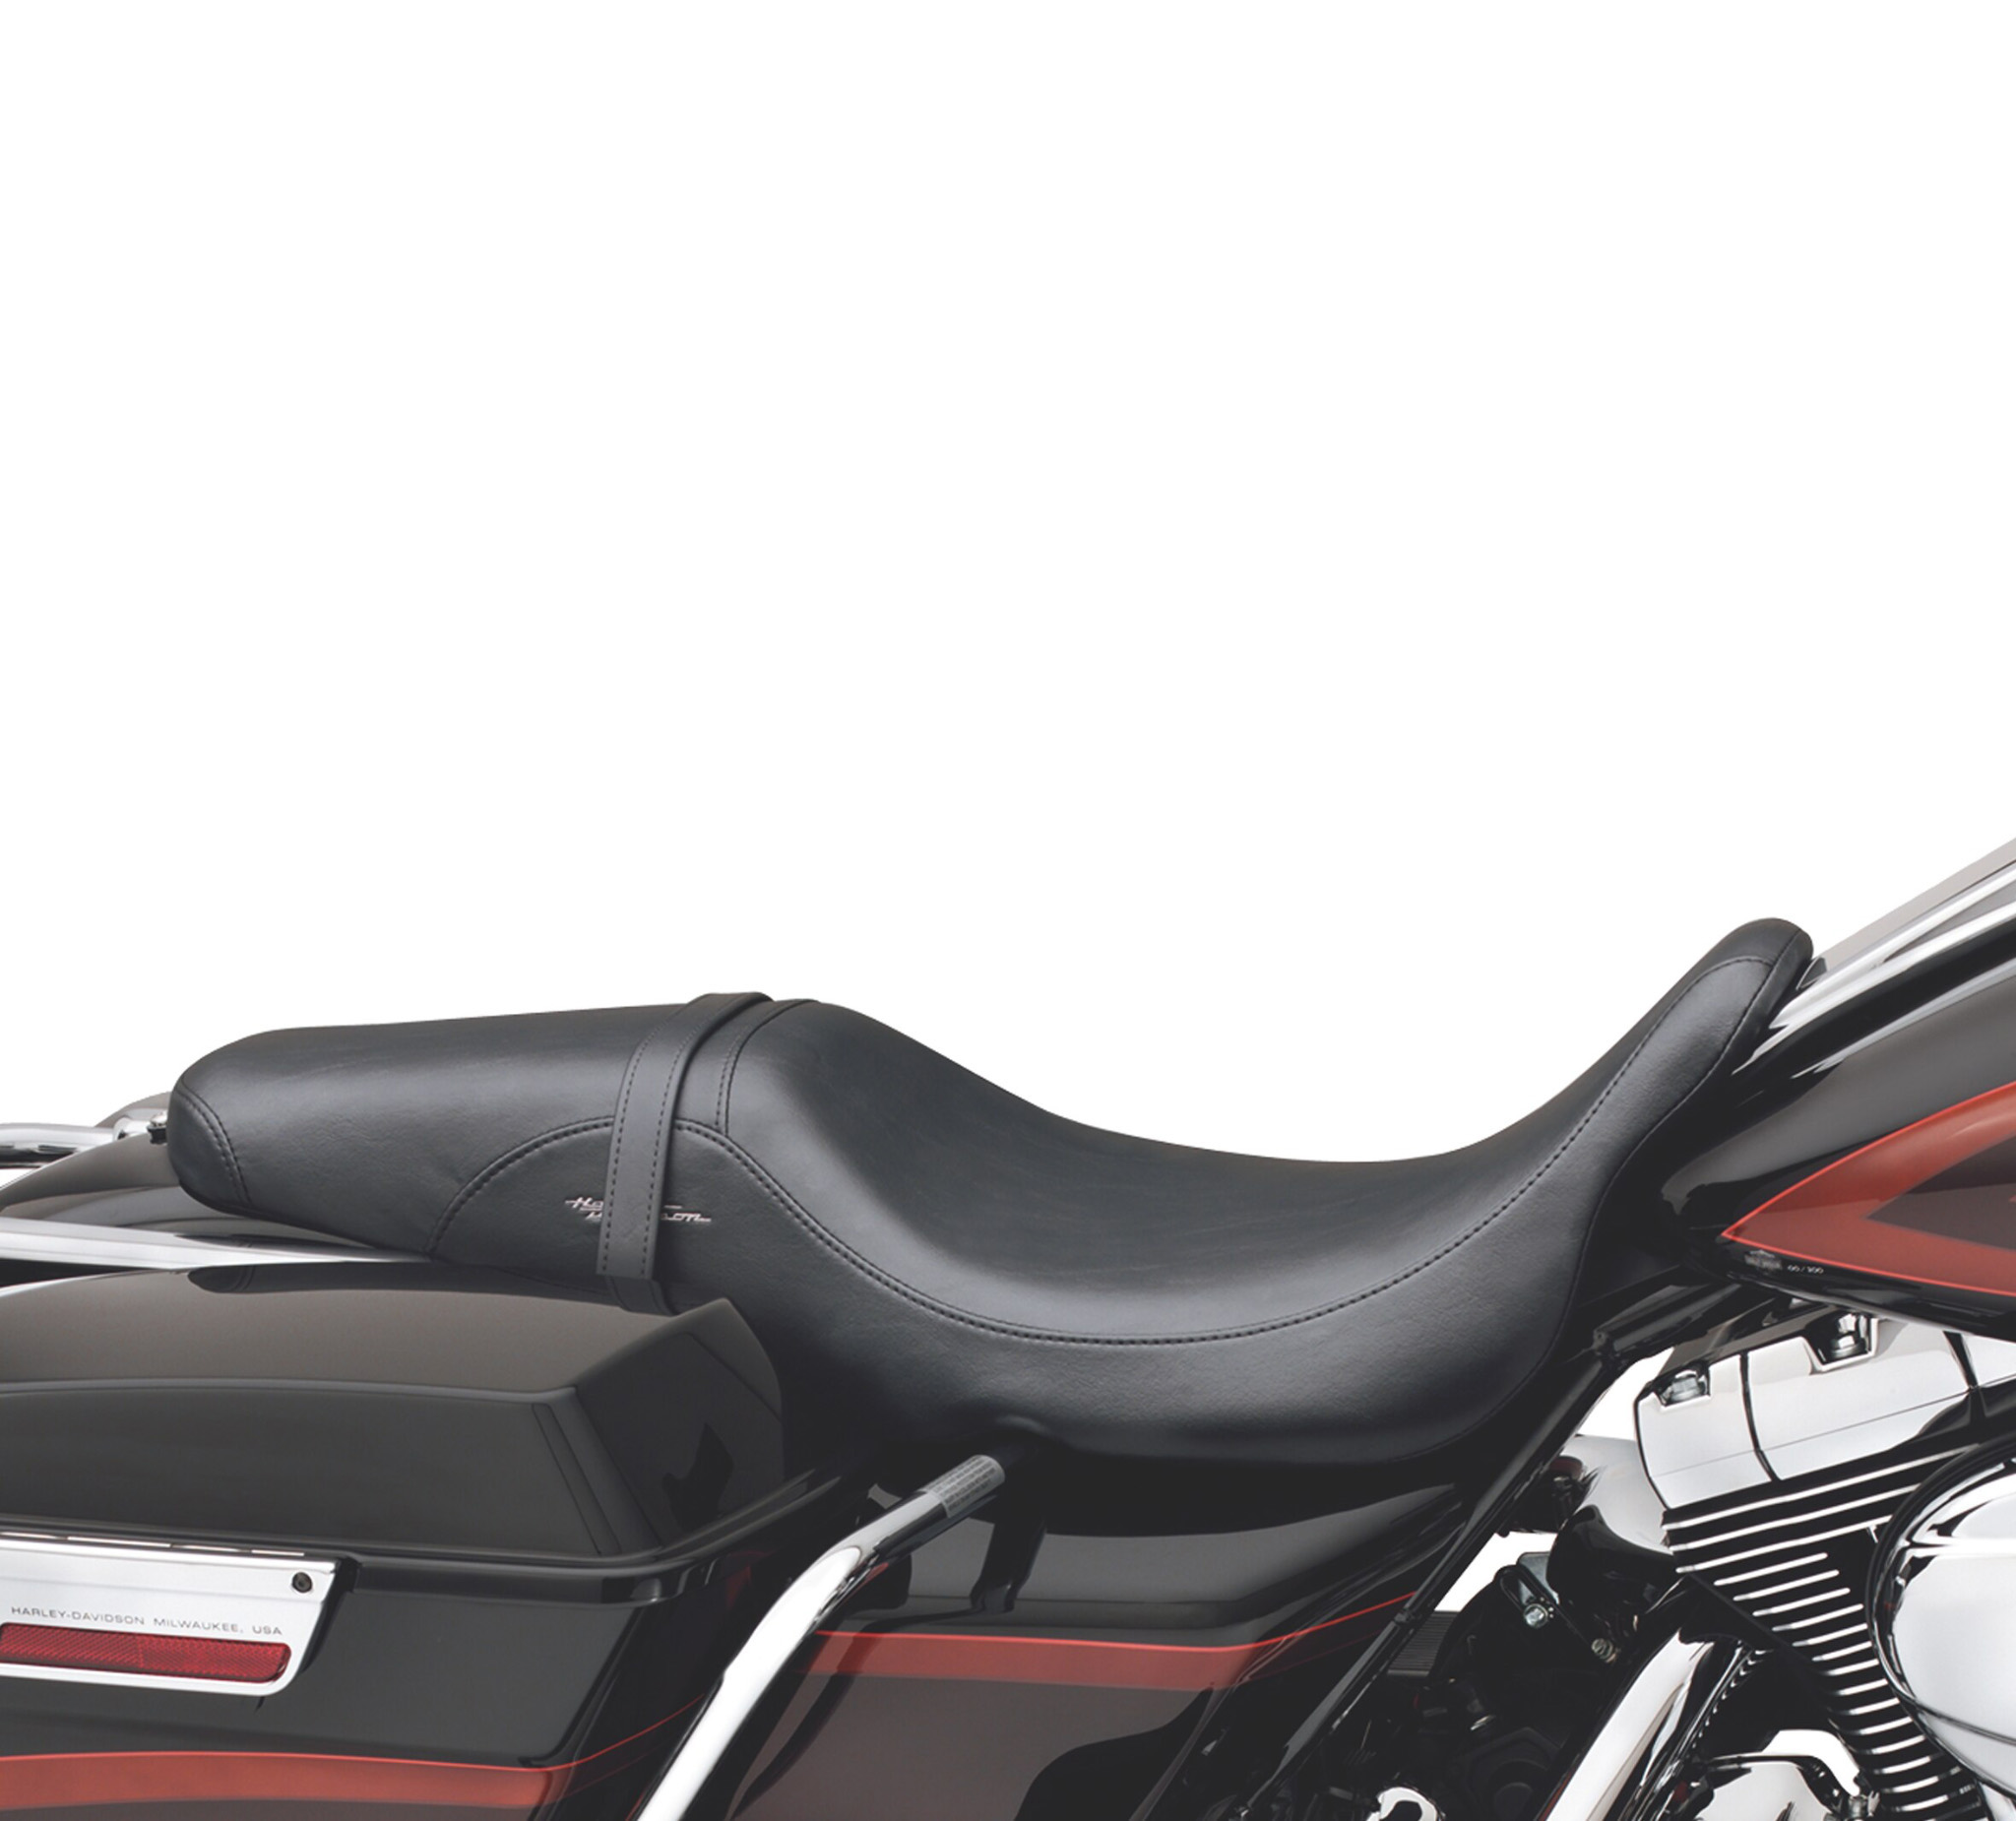 Harley Davidson Ultra Limited 2018 Farben Und Preise